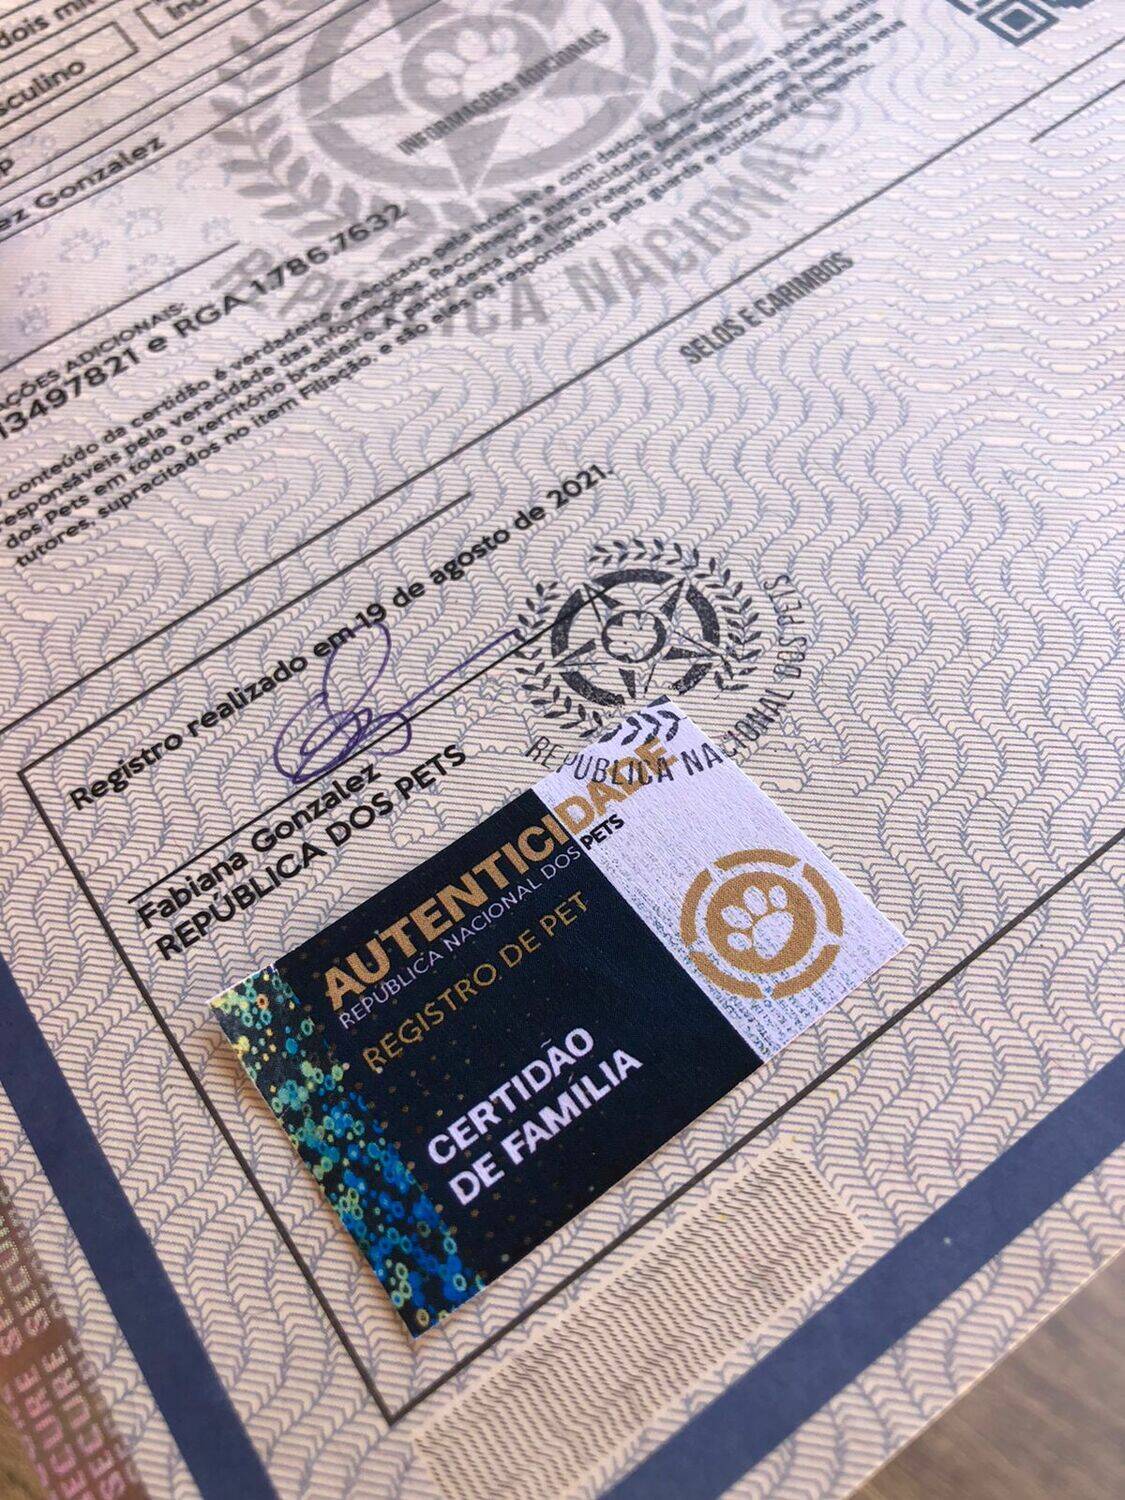 A certidão é impressa em papel moeda com itens de segurança. Foto: Divulgação